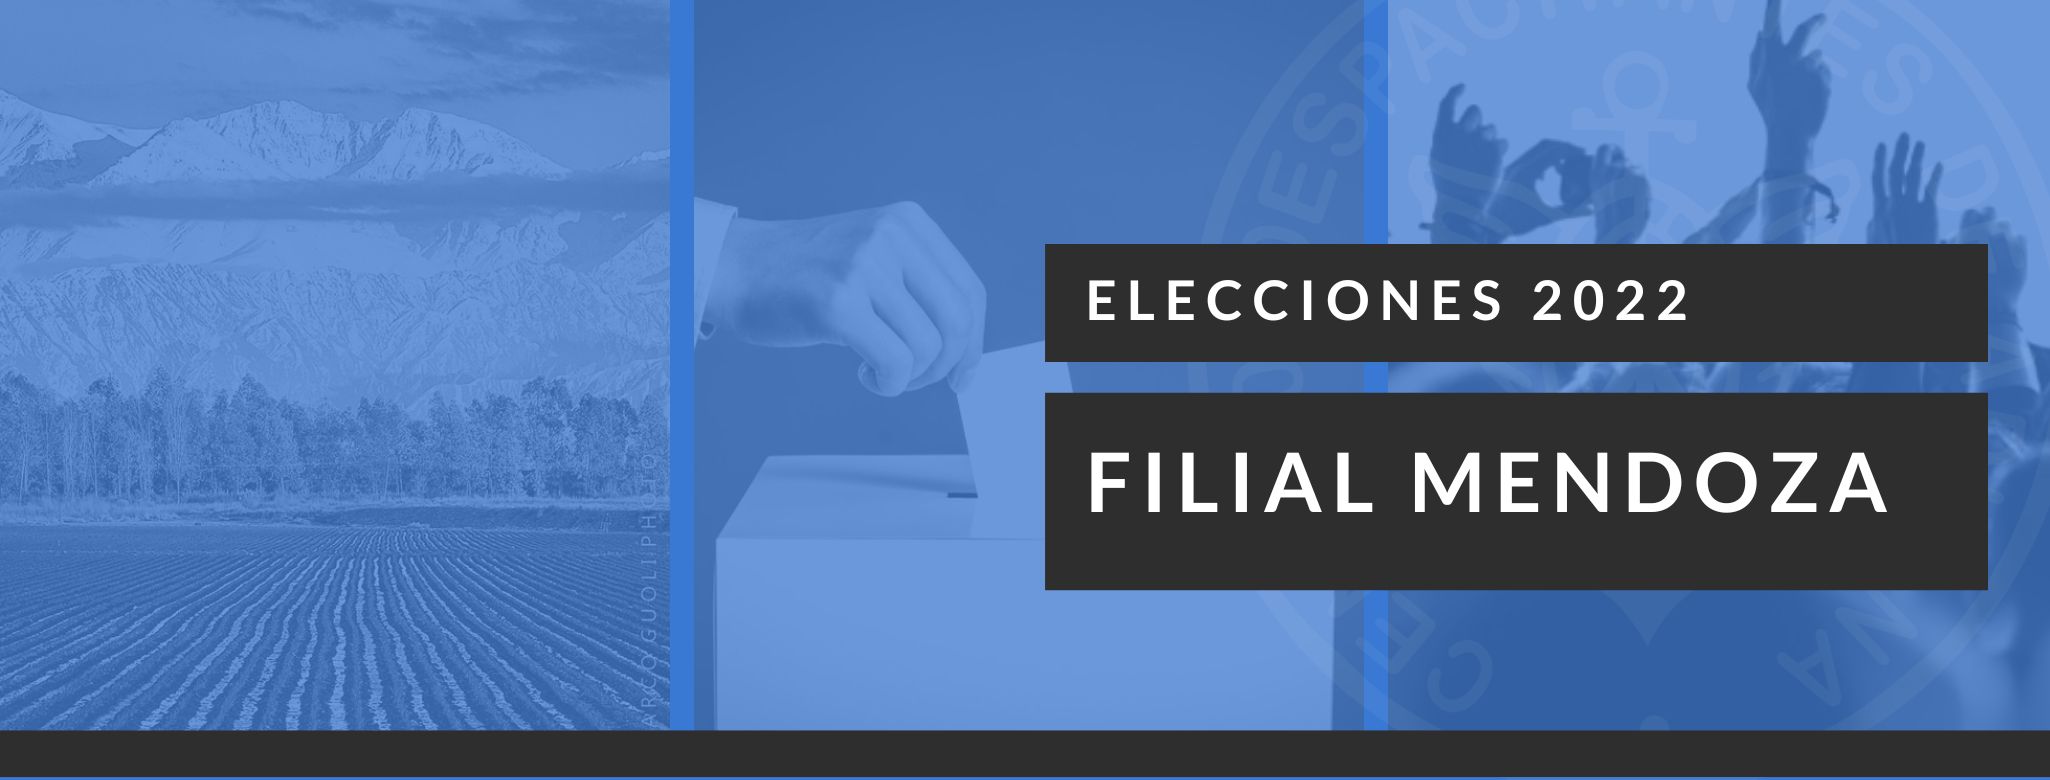 Filial Mendoza - Elecciones 2022